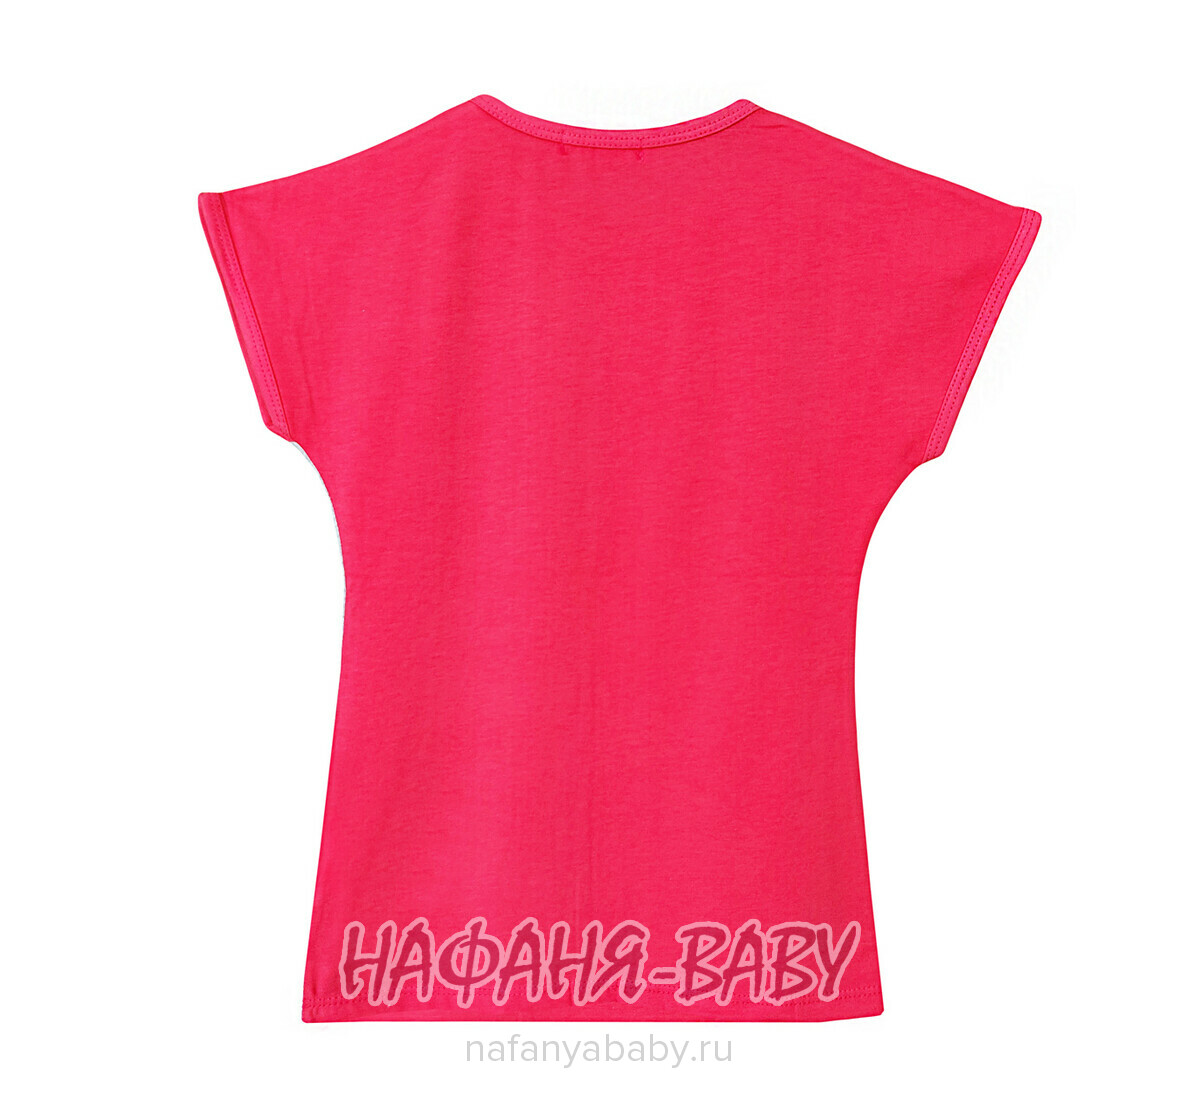 Детская футболка для девочки LILY Kids, купить в интернет магазине Нафаня. арт: 3611.